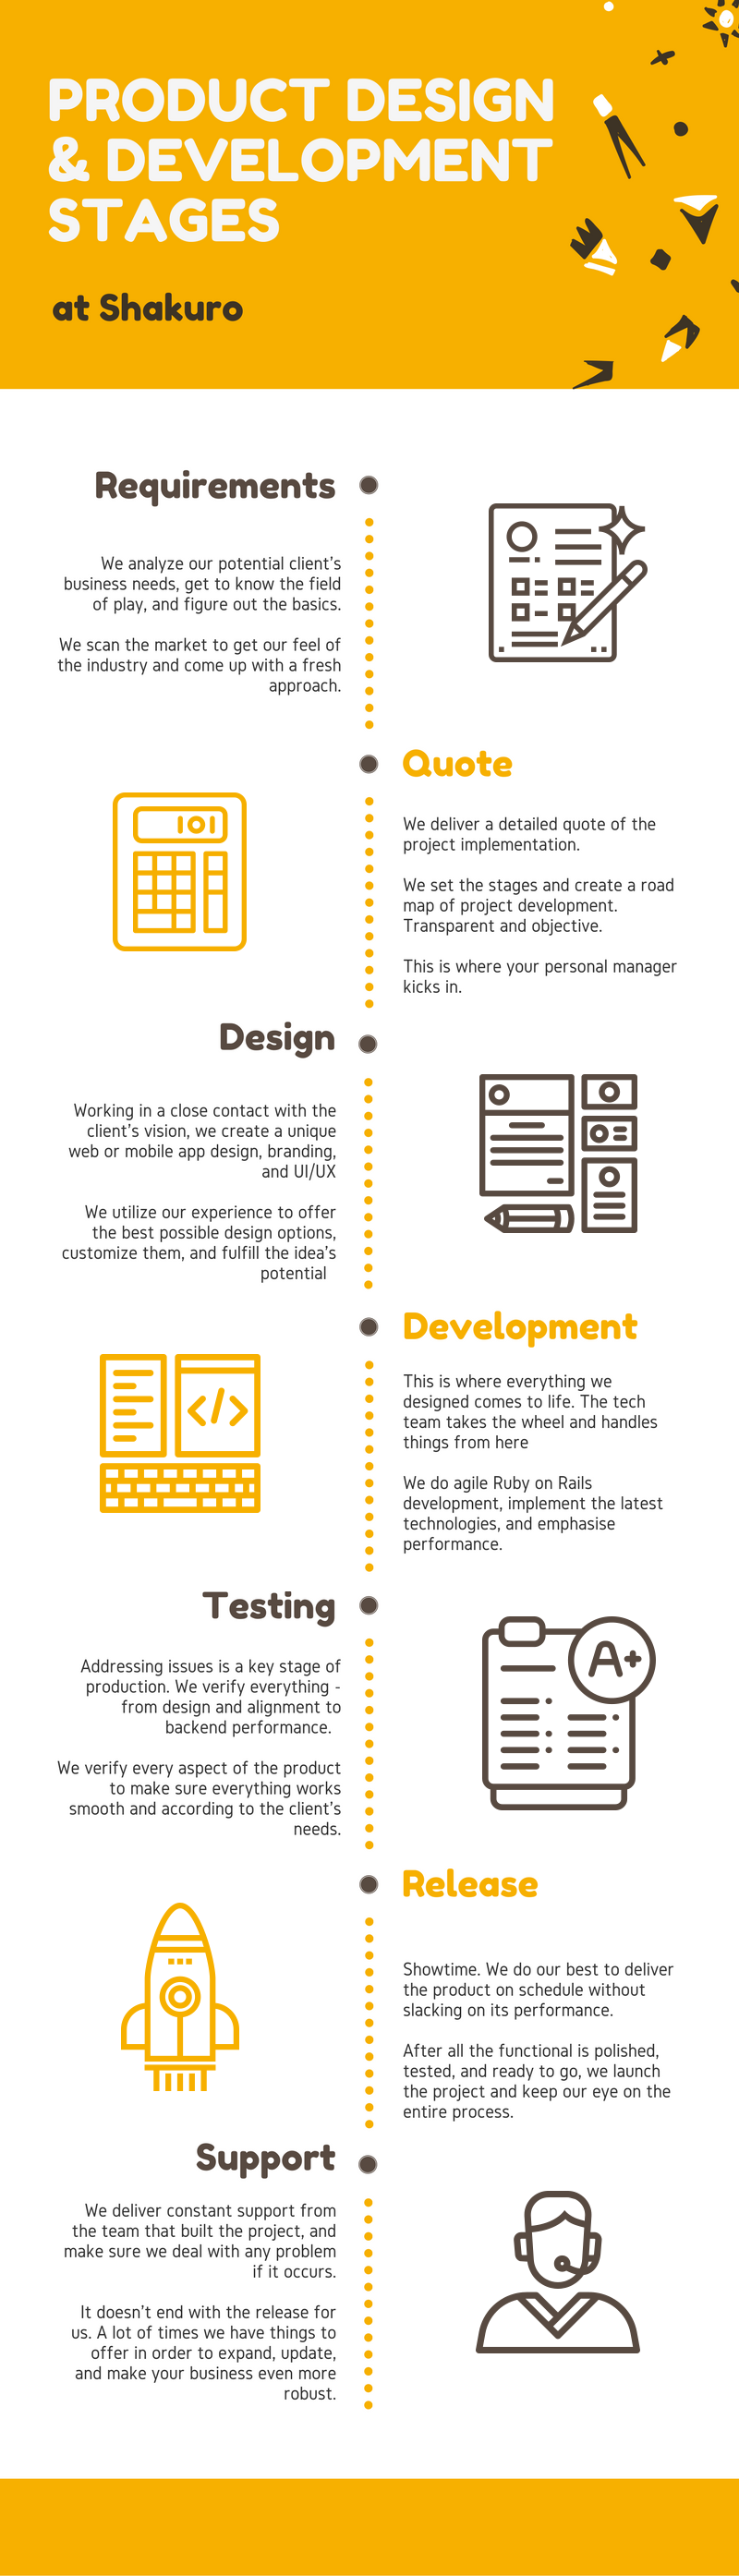 Shakuro workflow infographic